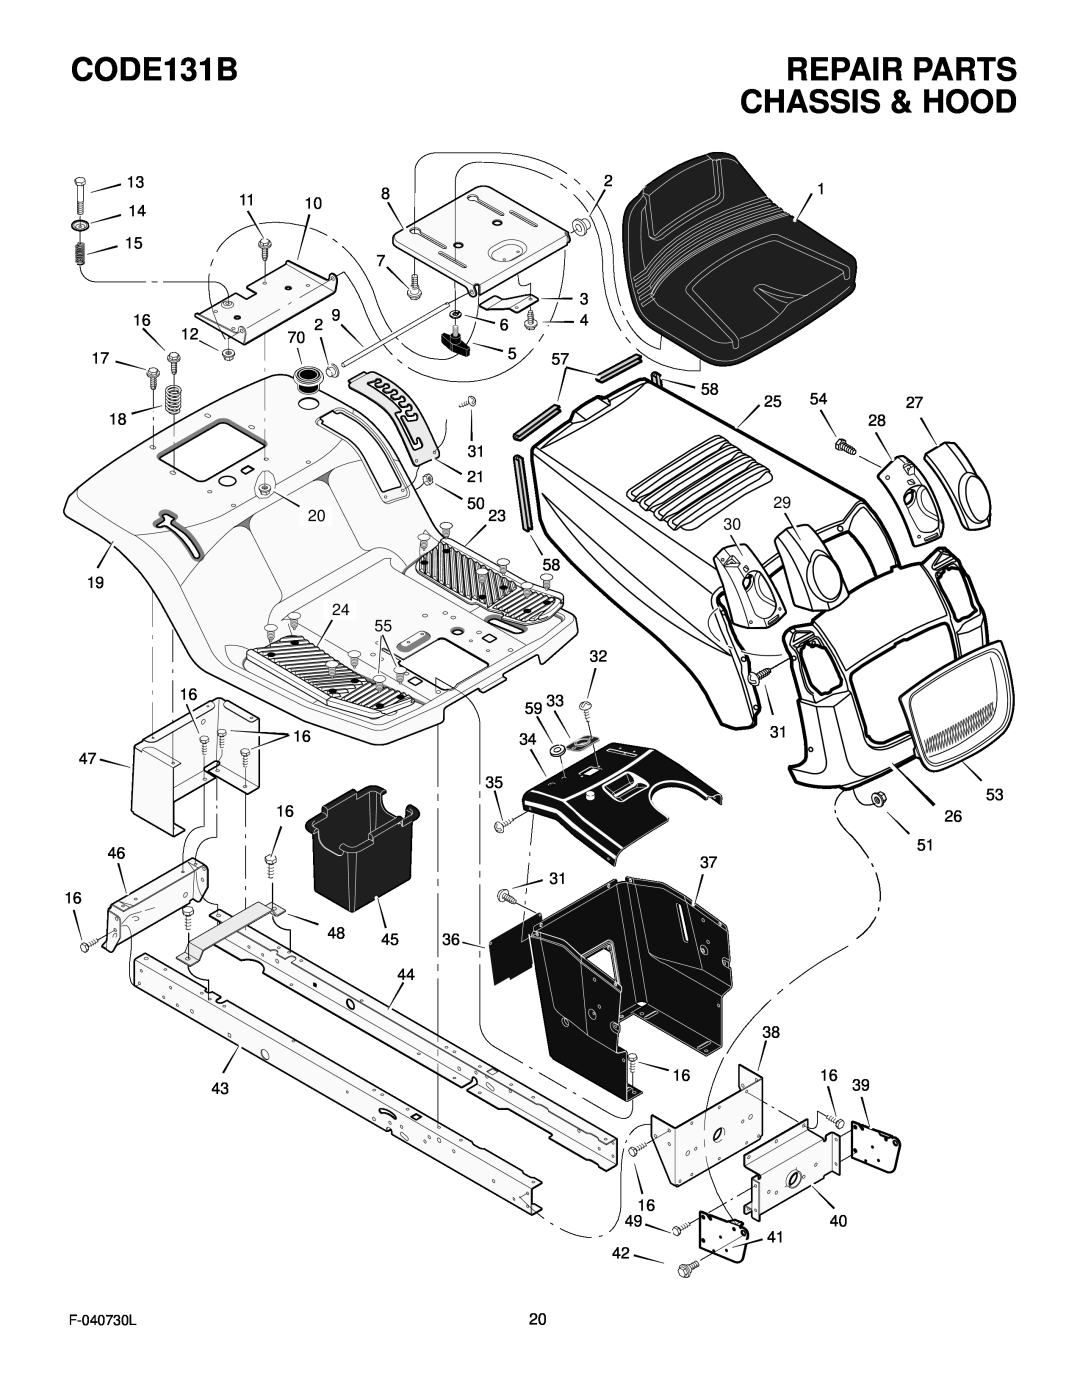 Hayter Mowers manual CODE131B, Repair Parts, Chassis & Hood, F-040730L 